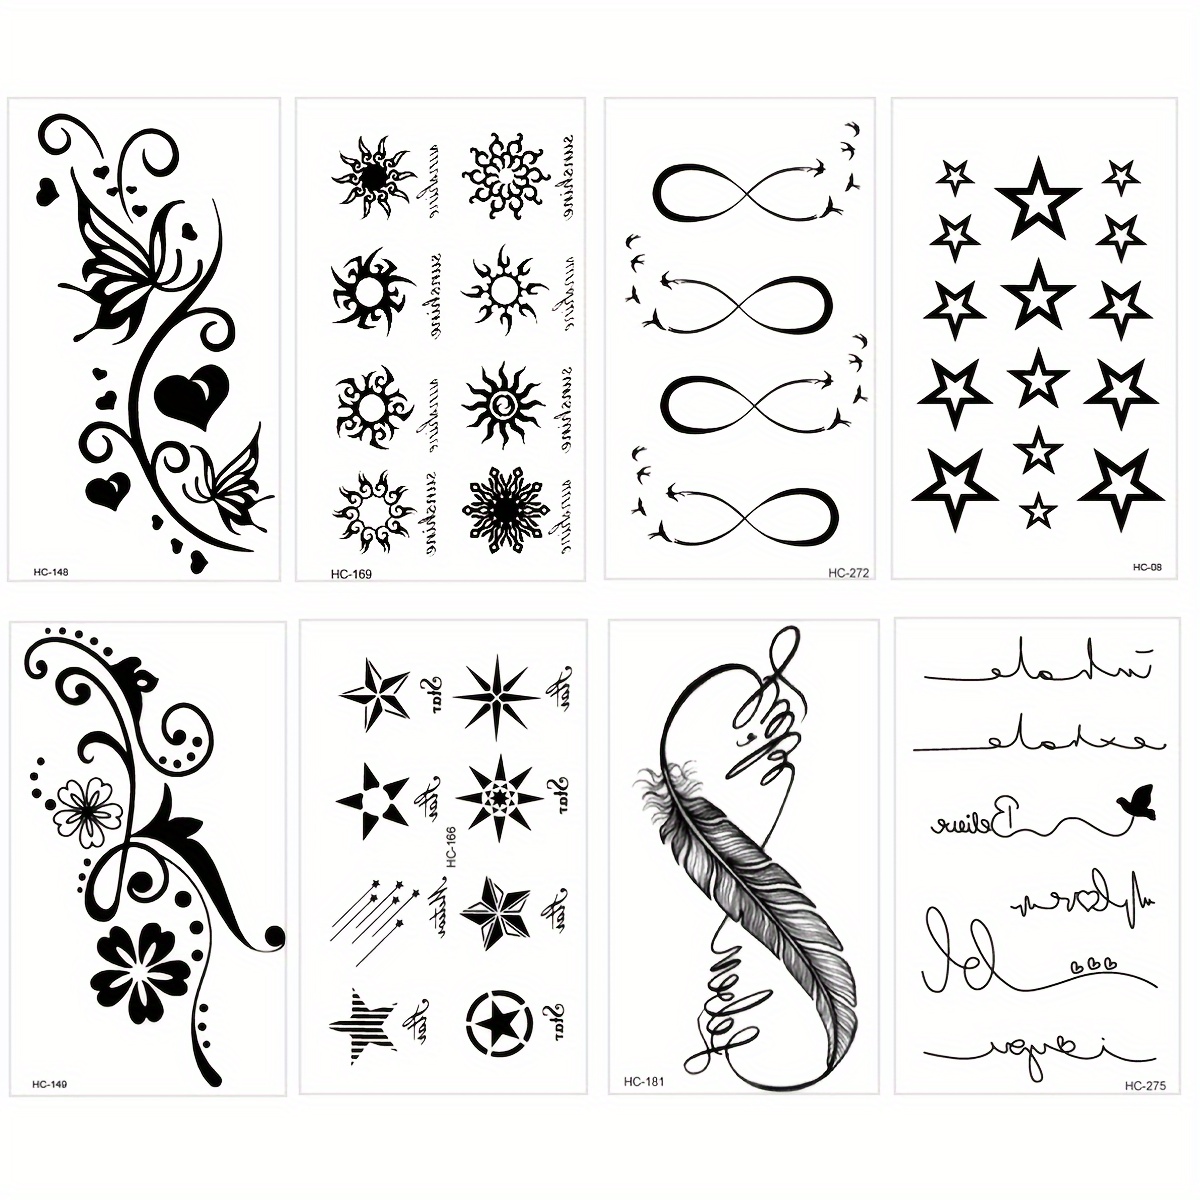 2 Blätter Gesicht Tattoo Aufkleber Stern & Mond Muster, aktuelle Trends,  günstig kaufen